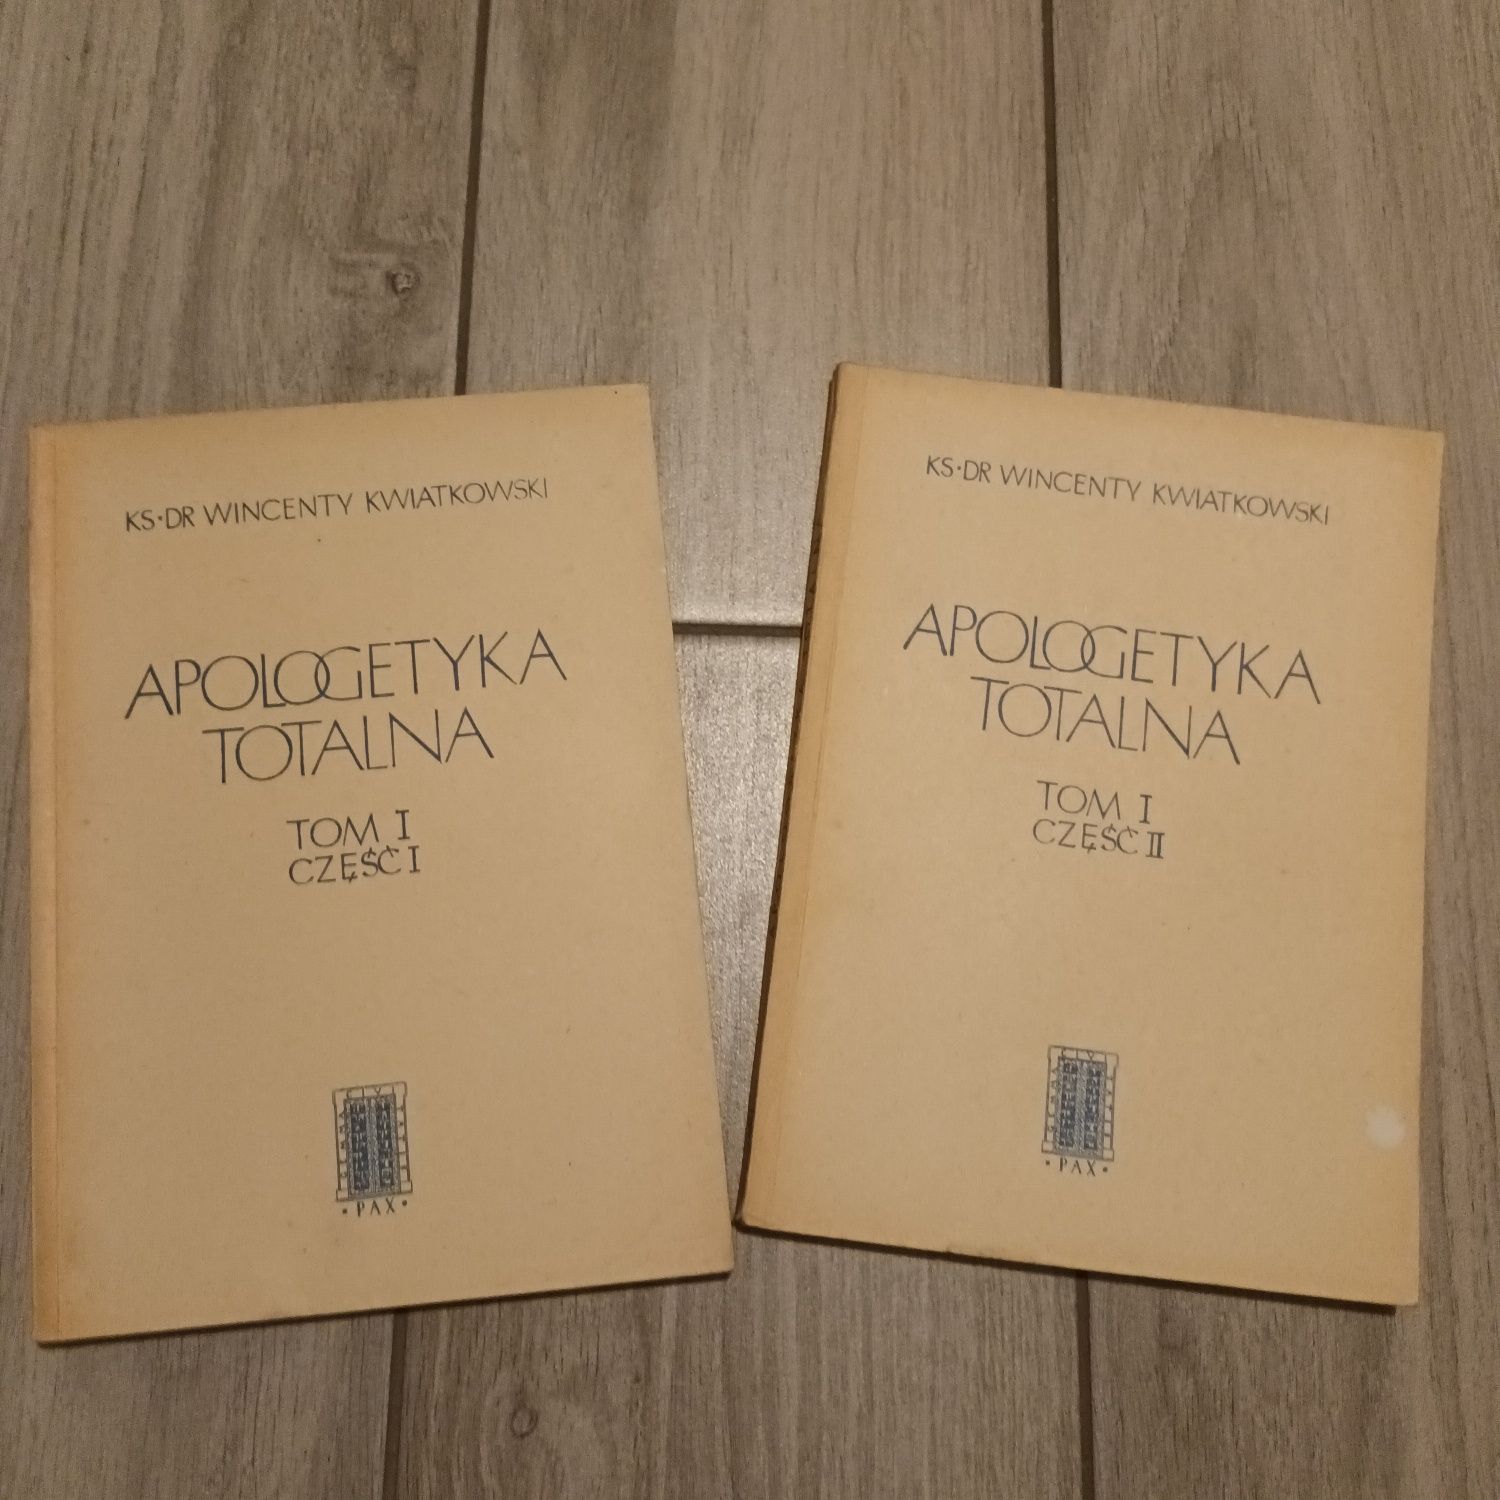 Apologetyka Totalna / 1955 / ks. Kwiatkowski / tom I , cz.I i II